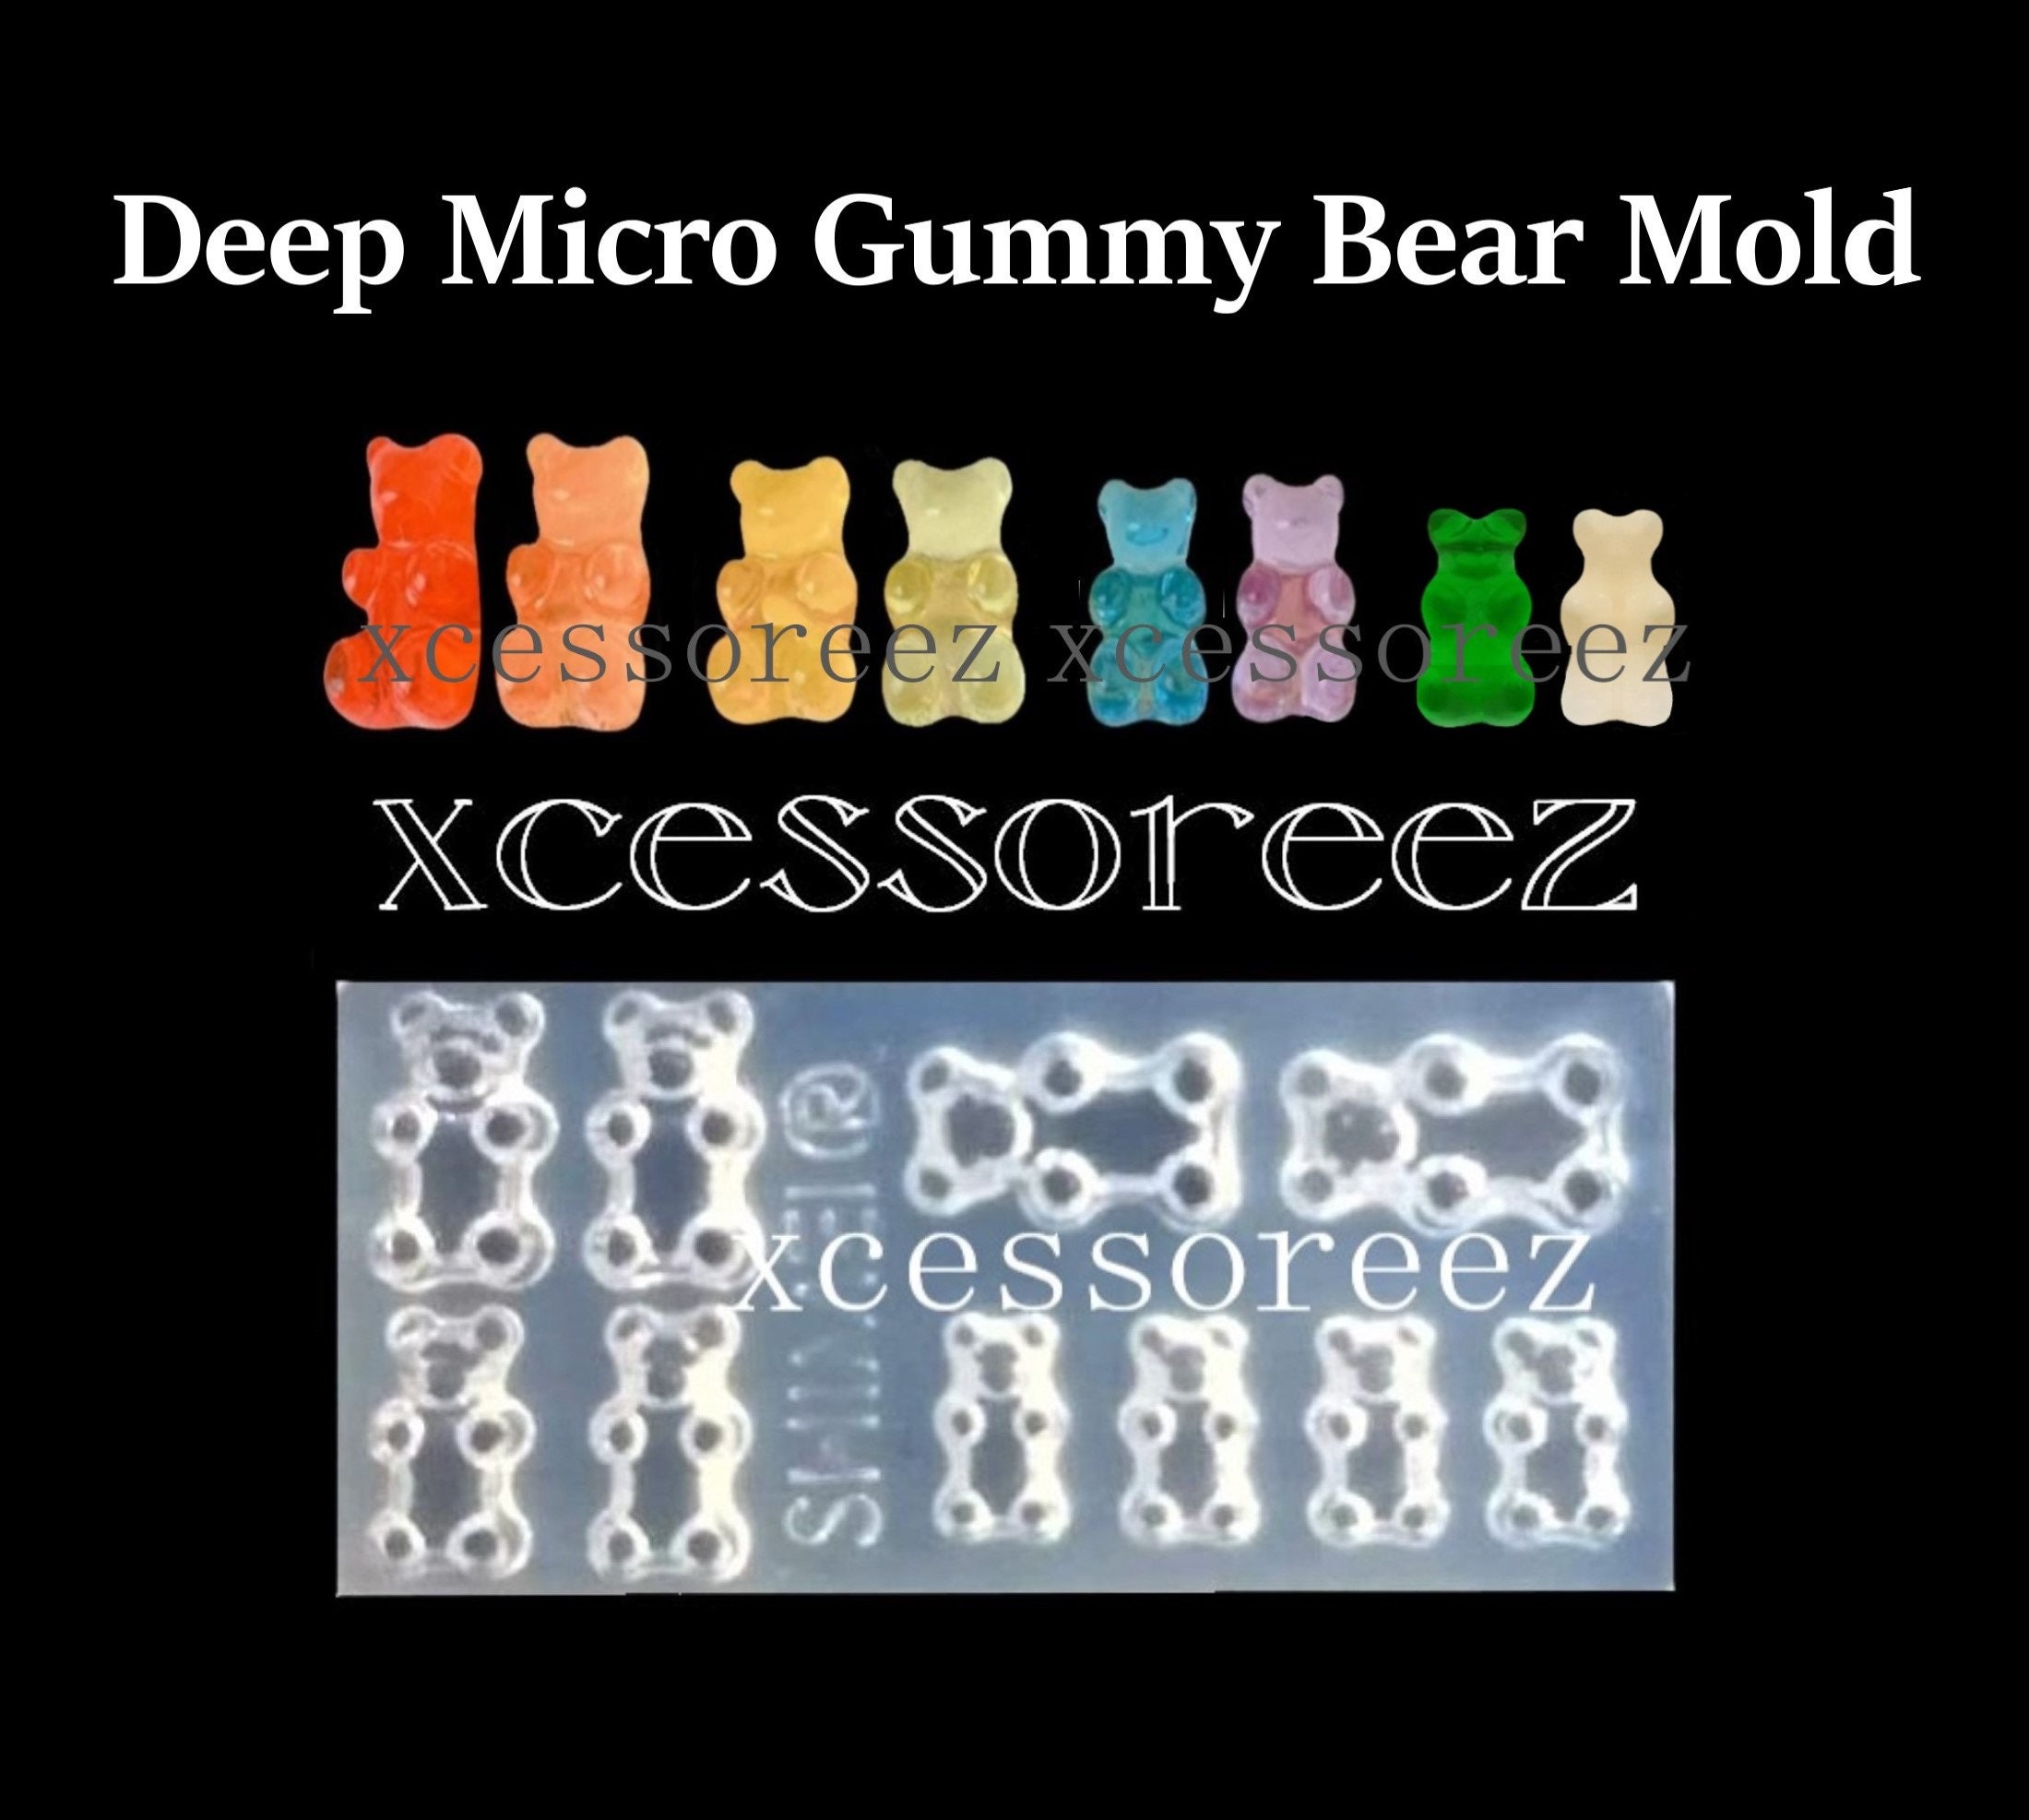 8 Cavity SHINY Large Gummy Bear Silicone Mold 